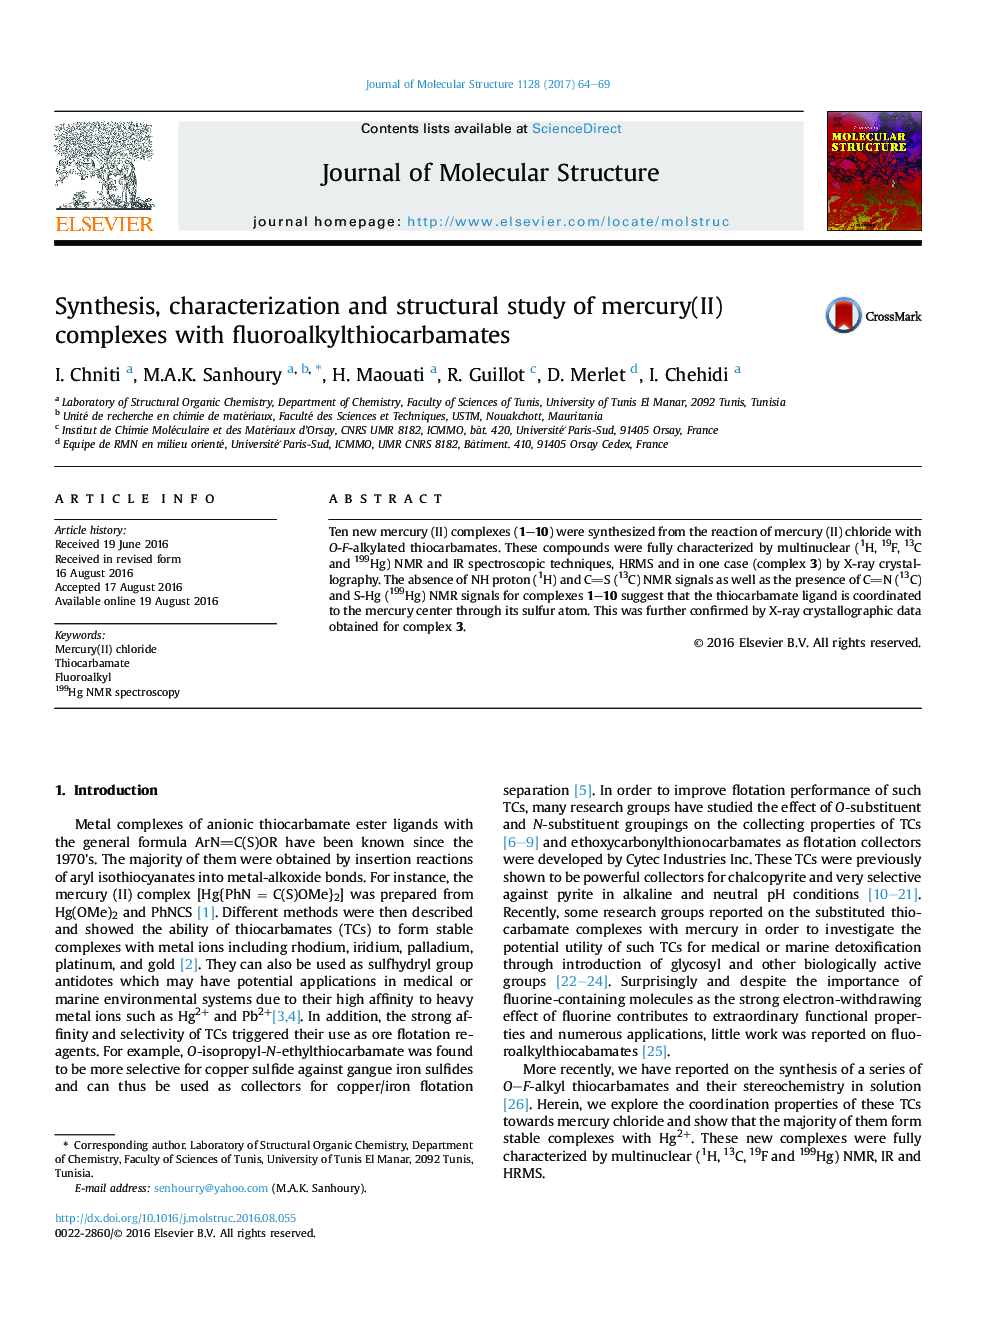 سنتز، شناسایی و مطالعه ساختاری  کمپلکس های جیوه(II) با fluoroalkylthiocarbamates